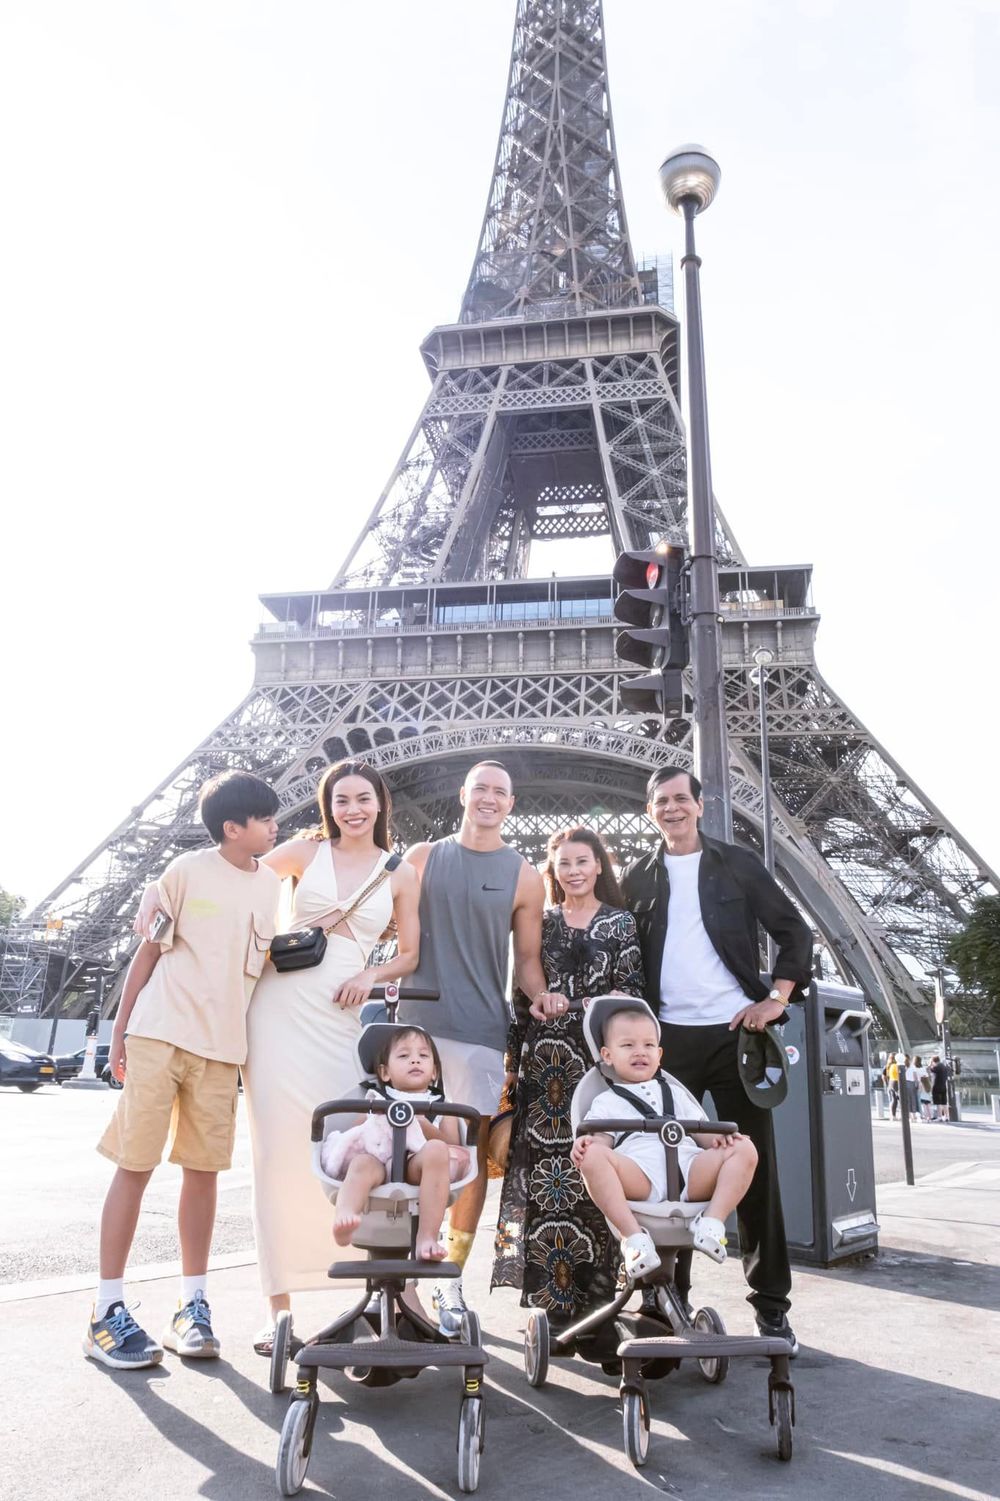  
Đại gia đình Hồ Ngọc Hà có chuyến du lịch châu Âu. (Ảnh: Instagram @henrylisaleon) - Tin sao Viet - Tin tuc sao Viet - Scandal sao Viet - Tin tuc cua Sao - Tin cua Sao